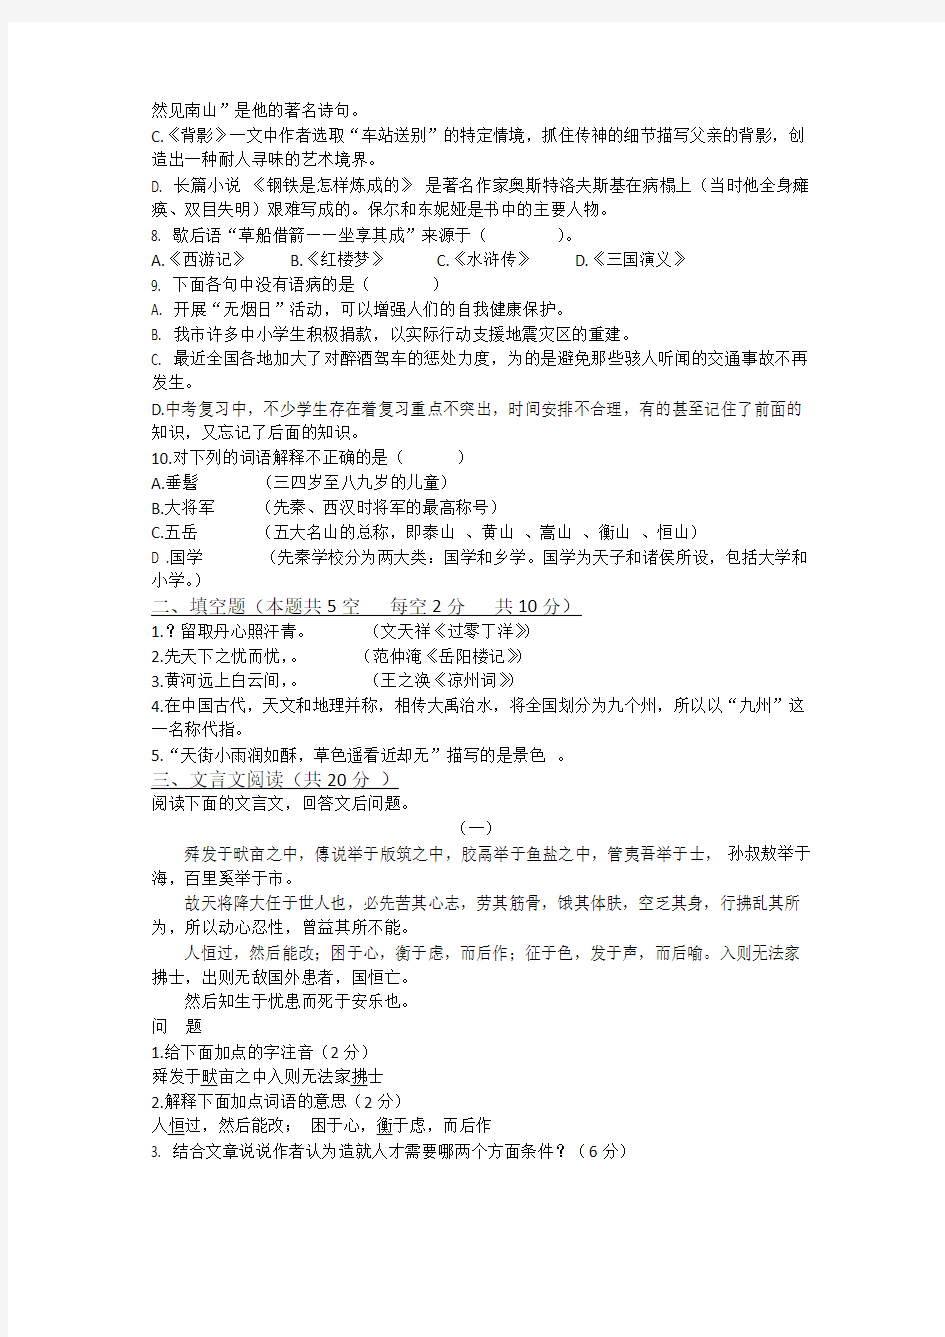 长春大学2016年特殊教育学院招生考试语文试题纸(听障考生)